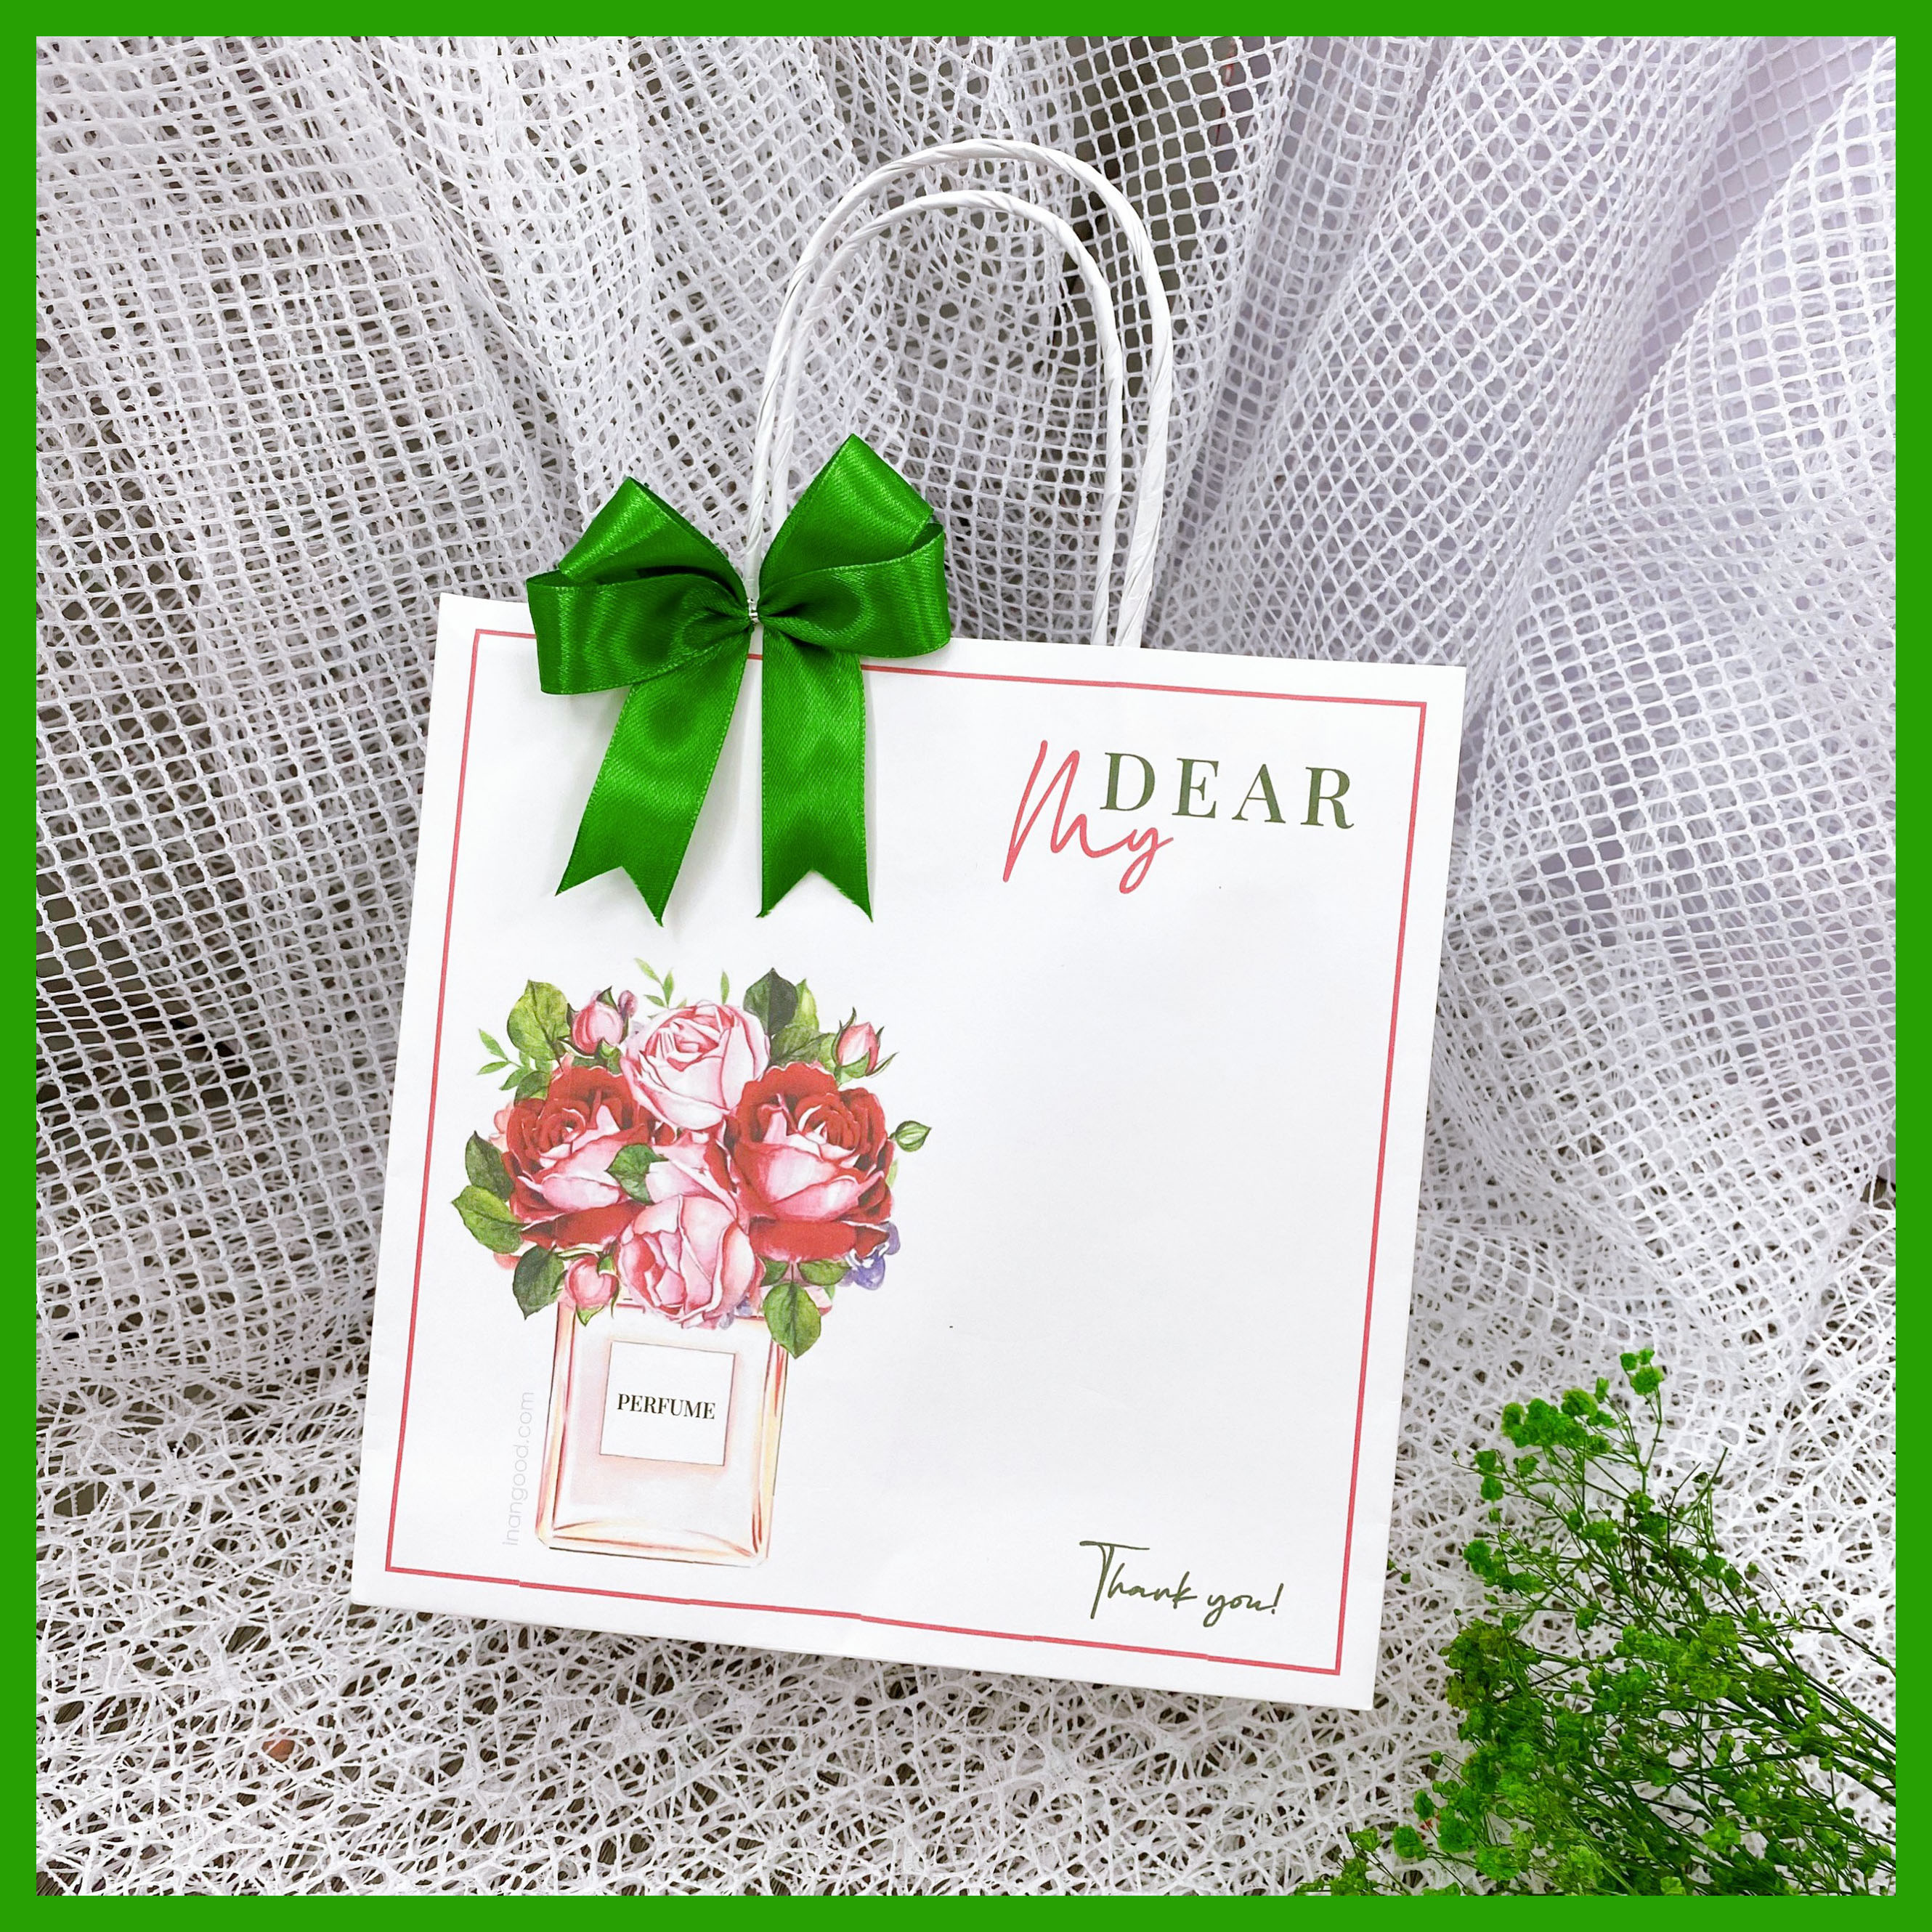 Túi giấy kraft mẫu nước hoa dành cho shop chuyên mỹ phẩm nước hoa, spa với nhiều kích thước tặng kèm nơ trang trí